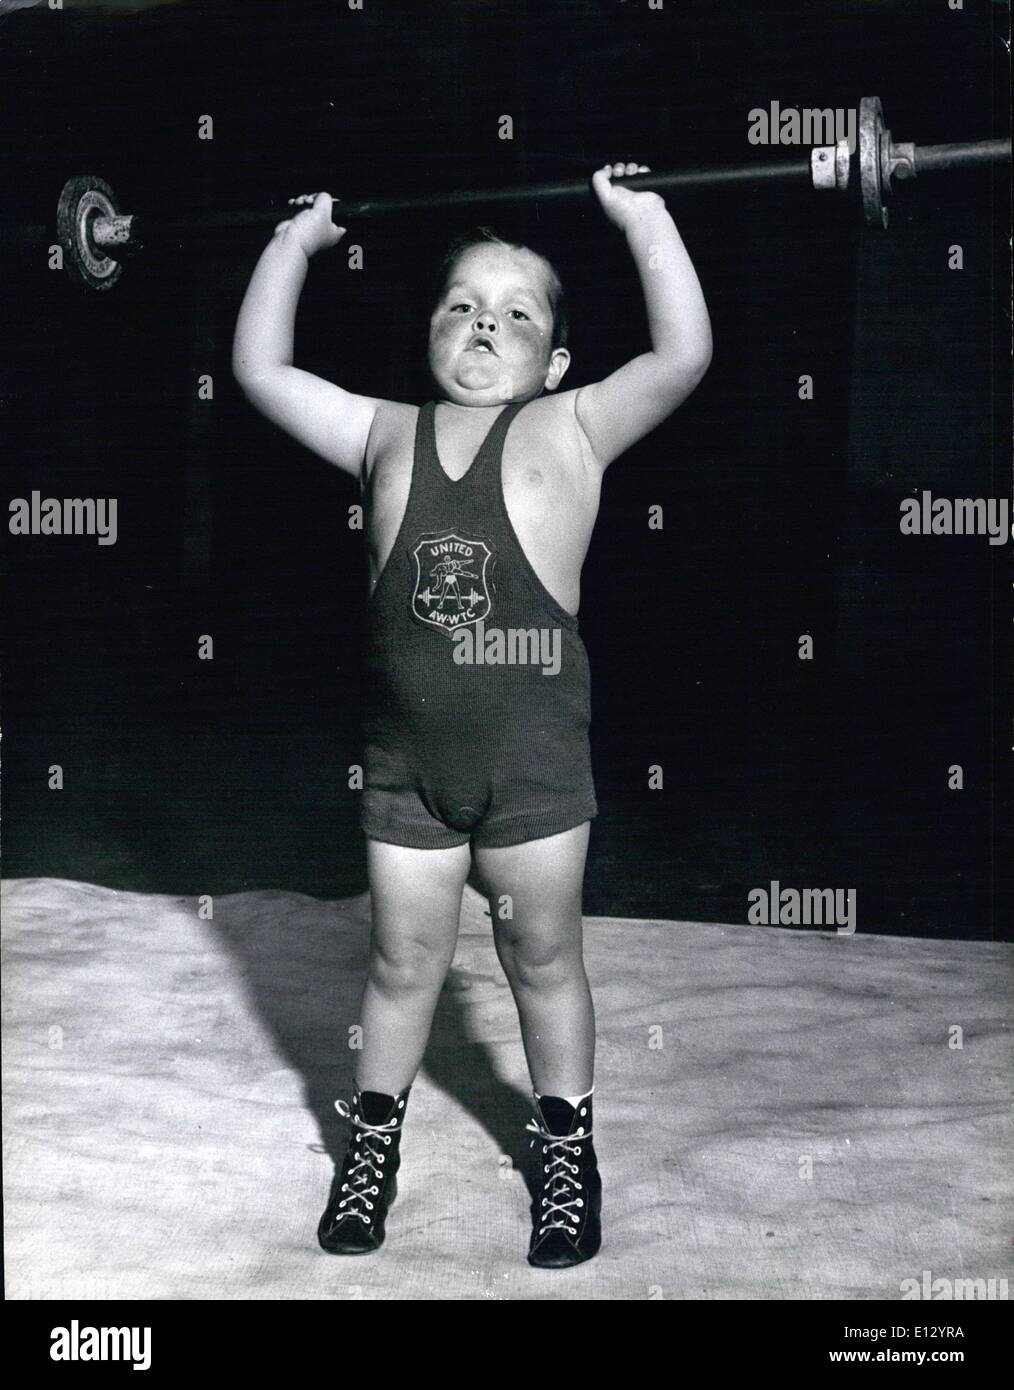 26. Februar 2012 - die weltweit härtesten vier-jährige: Jack Ingls wird in einigen der Praxis im Club in Kennington, von denen er Maskottchen ist. Sein Vater ist im Clubsekretariat. Er kann bereits 20 Pfund heben. Stockfoto